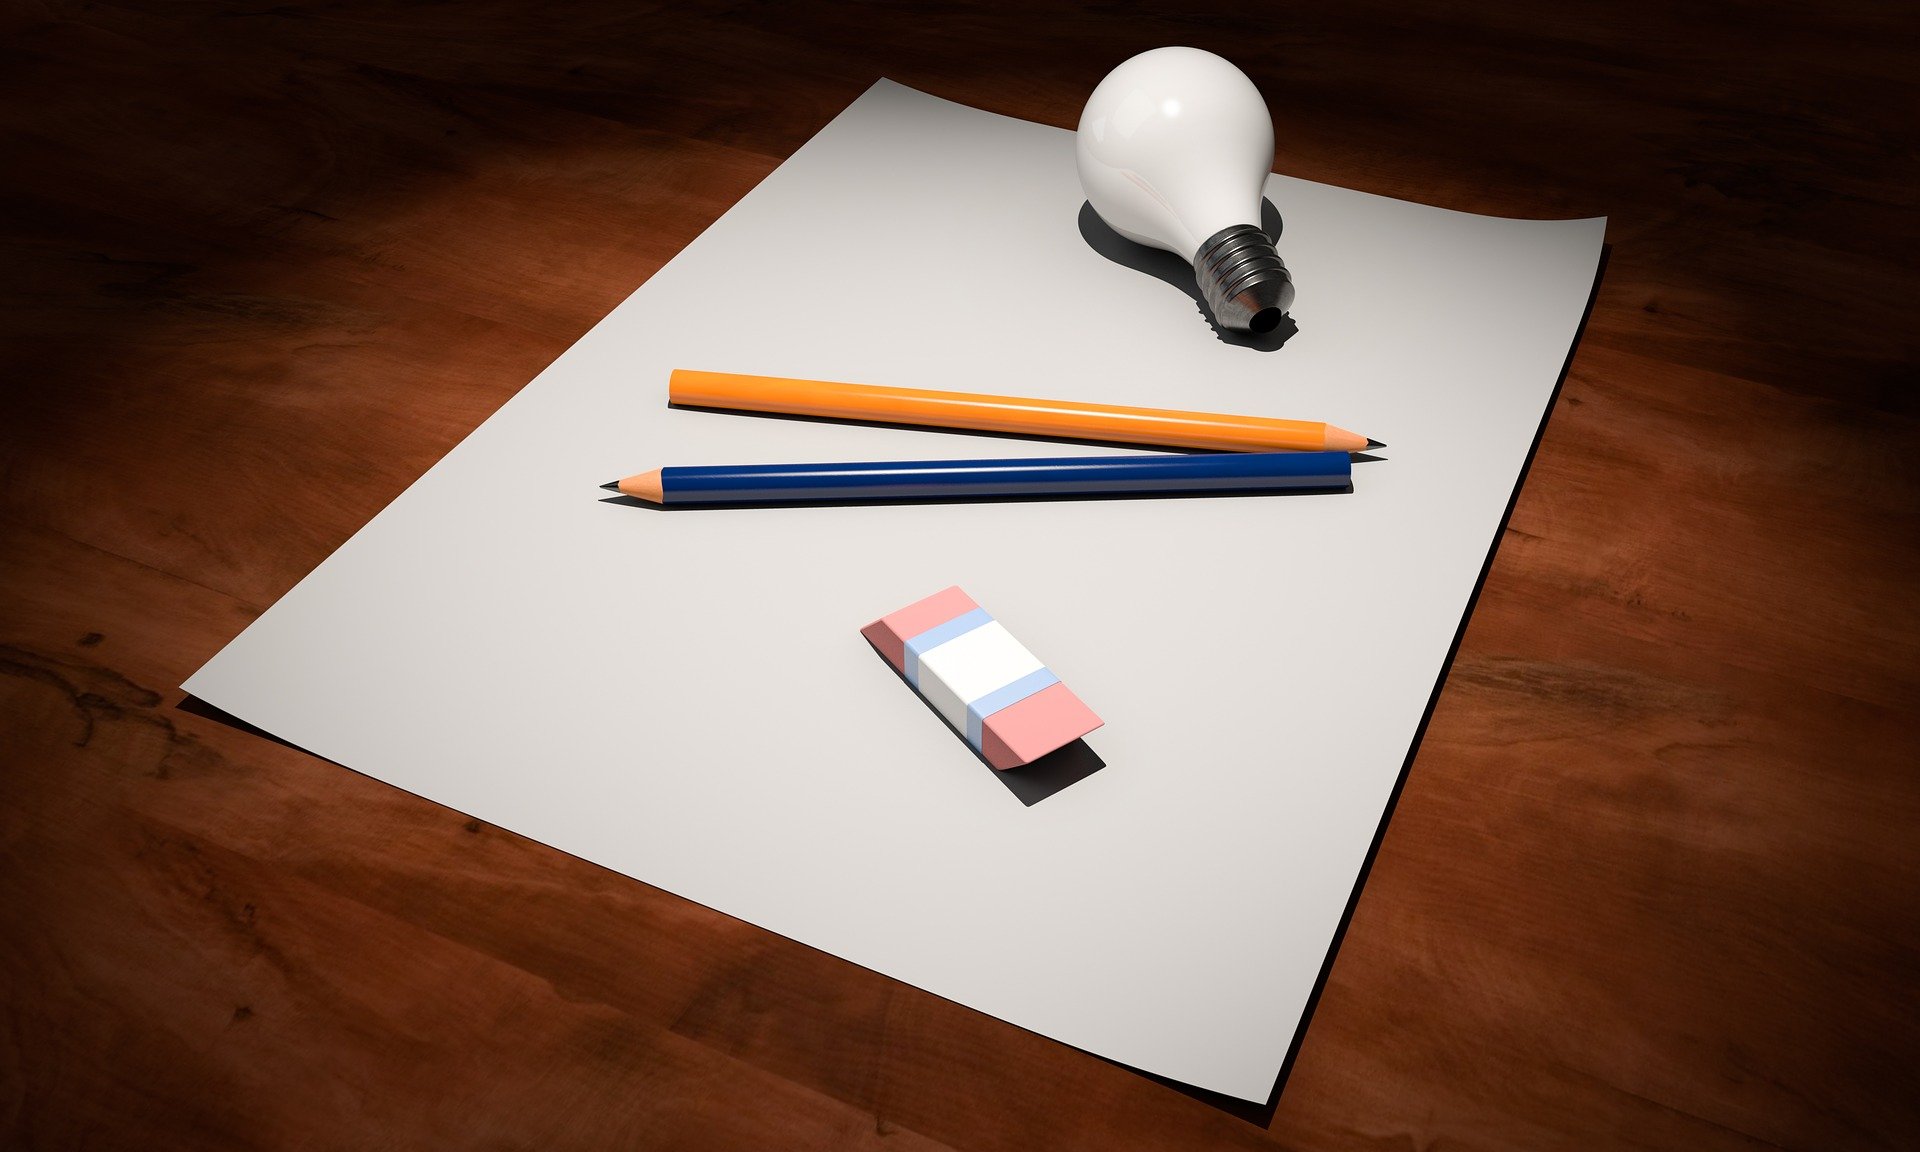 A light bulb, pencils, and paper